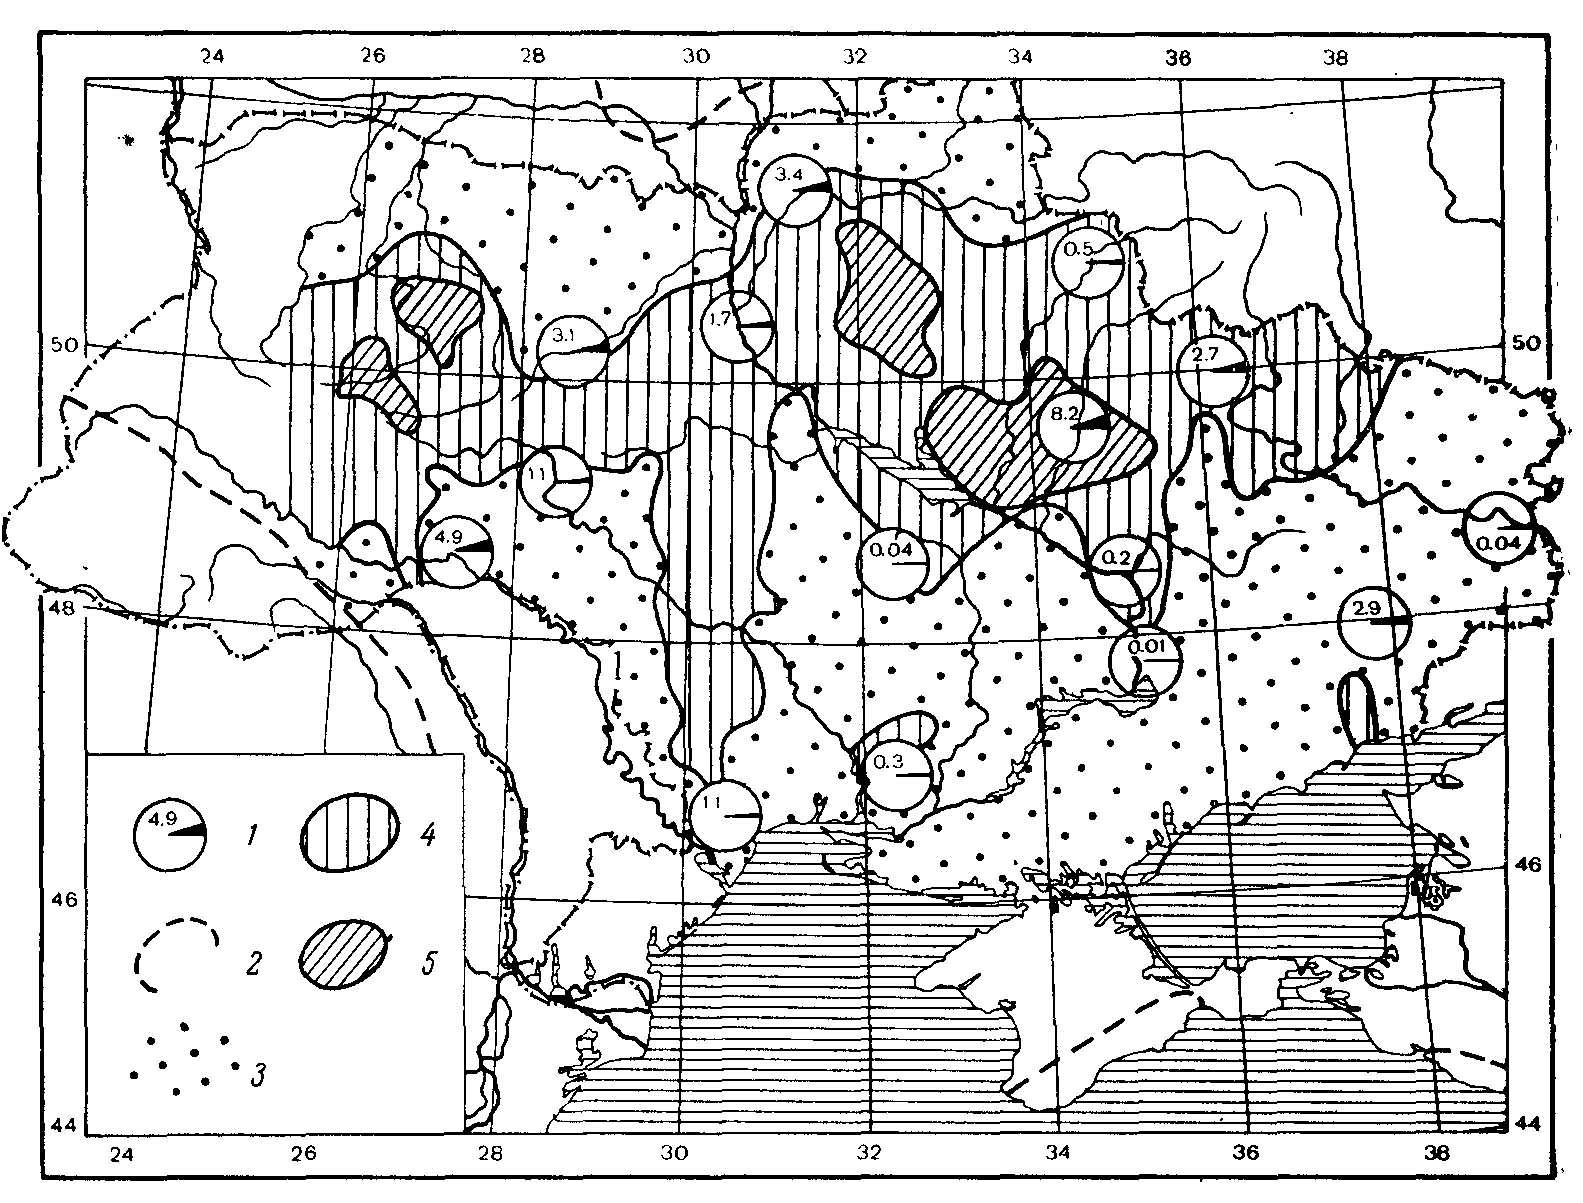 Рис. 2. Частоты распределения меланнстов в популяциях обыкновенного хомяка Cricetus cricetus L. на Украине. Распространение меланнстов приурочено к лесостепной зоне. 1 — частота встреч (в %) меланнстов в 15 областях Украины в 1935—1939 гг.; 2 — границы ареала обыкновенного хомяка (наши данные); 3 — районы, в которых в годы обследования не было обнаружено меланнстов; 4 — районы, в которых встречаются меланисты с частотой ниже 8%; 5 — районы, в которых частота встреч меланистов выше 8% (в Черниговской обл. максимально до 27%, в Полтавской обл. максимально до 41%). Составлено по данным Гершензона (1945а).